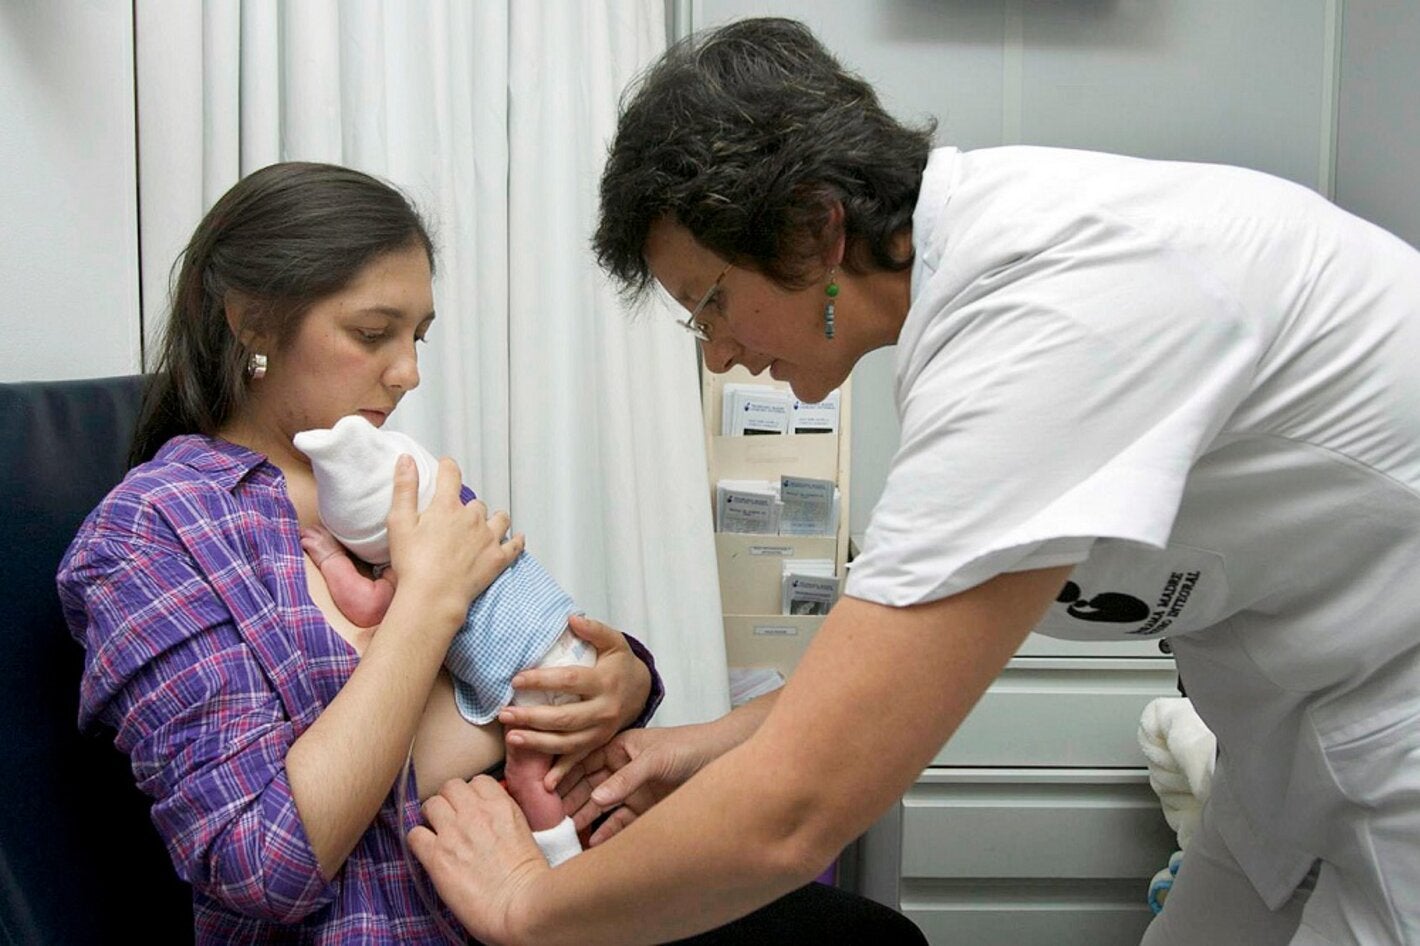 Madre con bebé en el pecho y enfermera ayudando